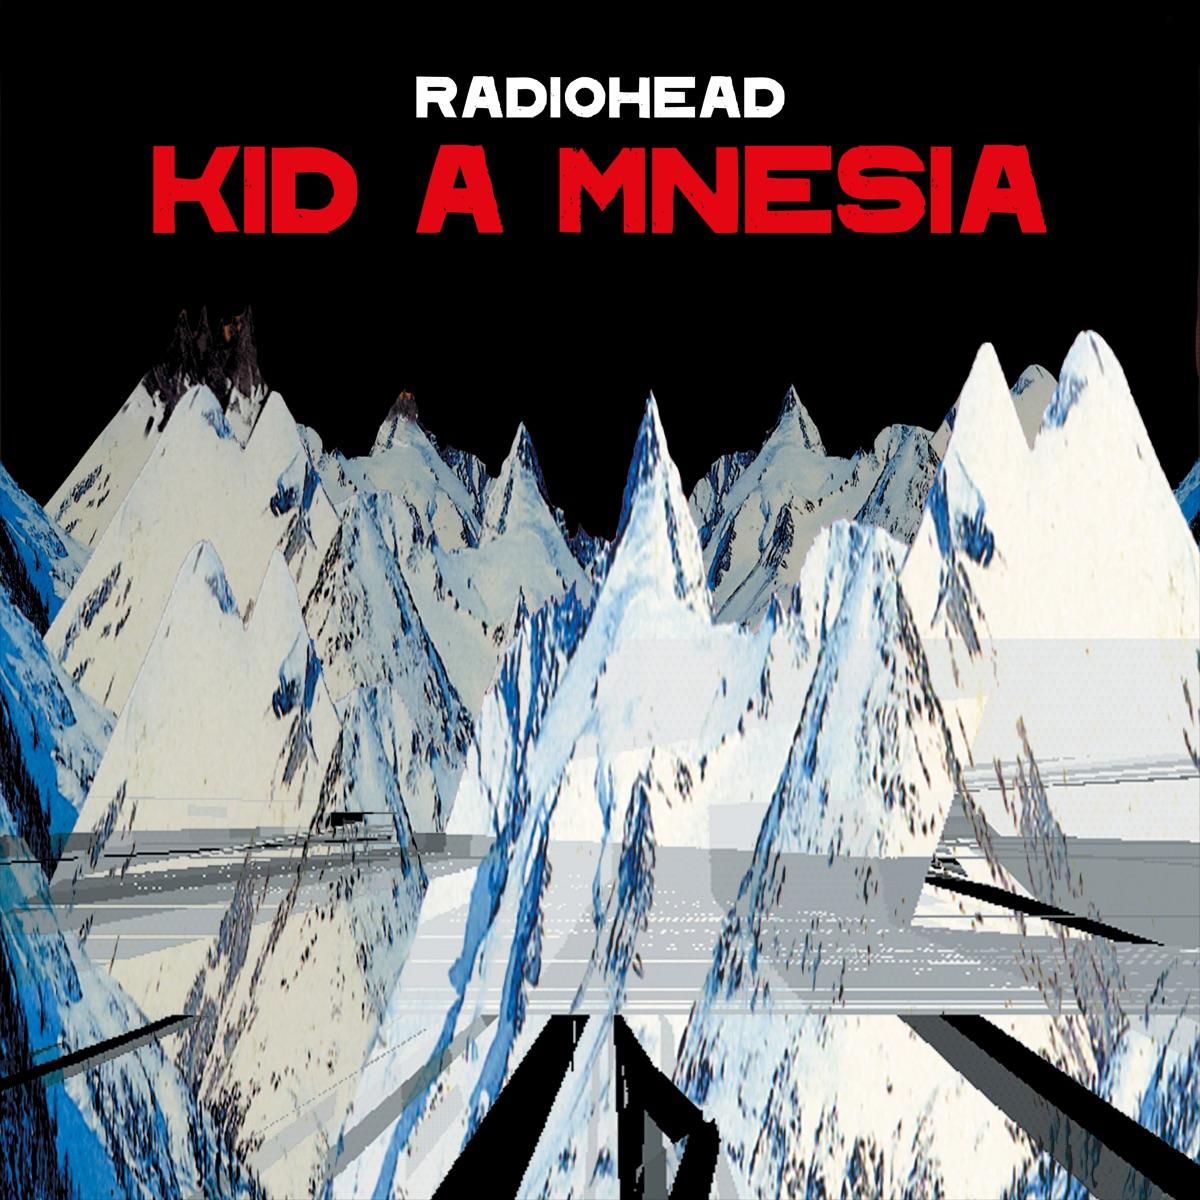 Kid - Mnesia (3 (CD) - Radiohead A Cd)